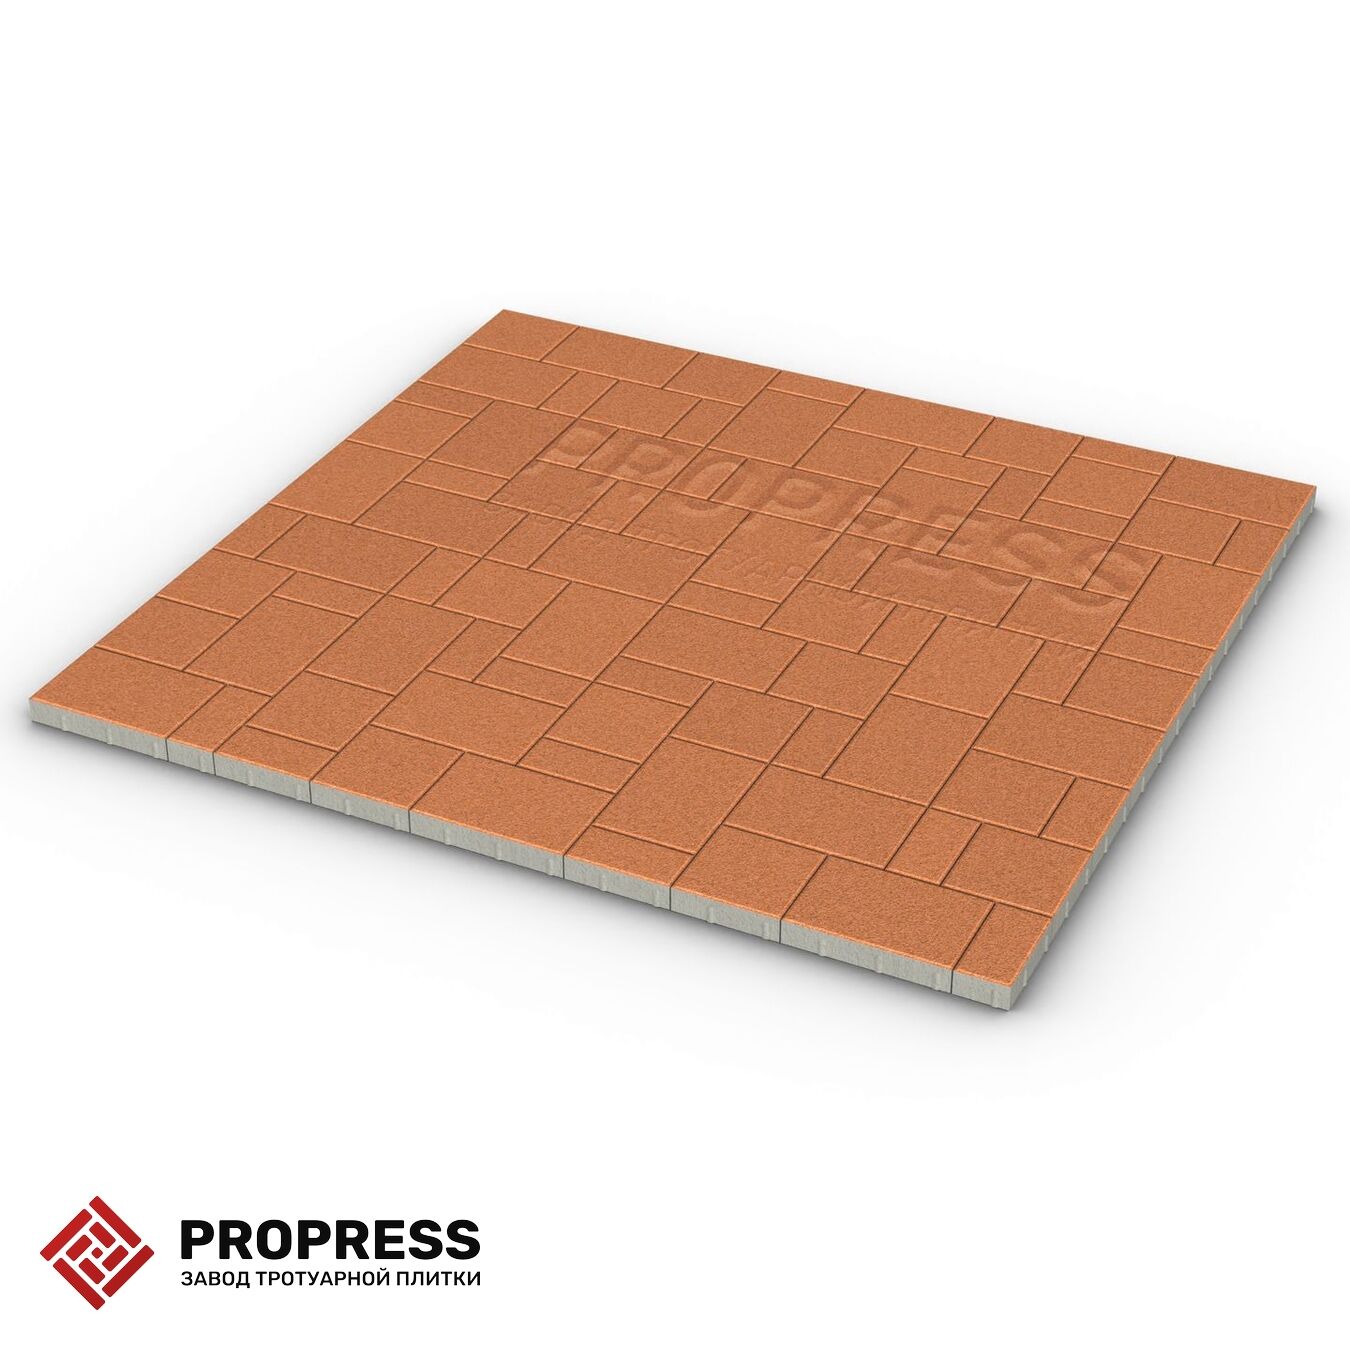 Тротуарная плитка Пропресс Лэндхаус Оранжевый мрамор 40 мм